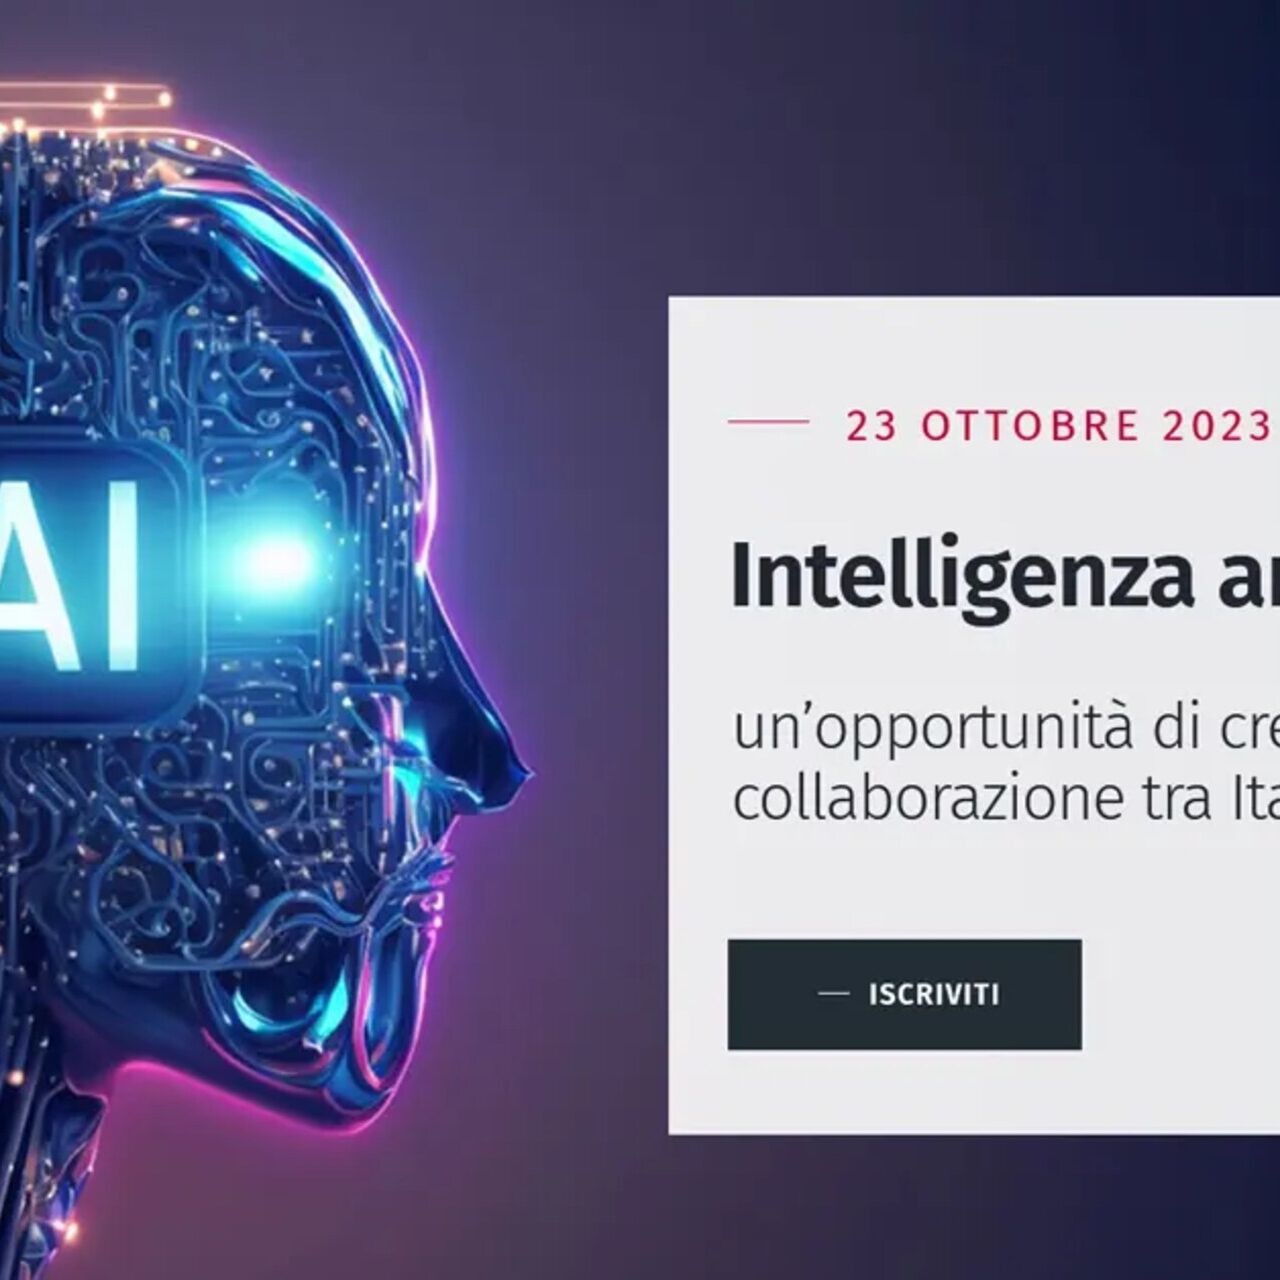 Svizzera e Italia: la key visual dell'evento su AI, Italia e Svizzera